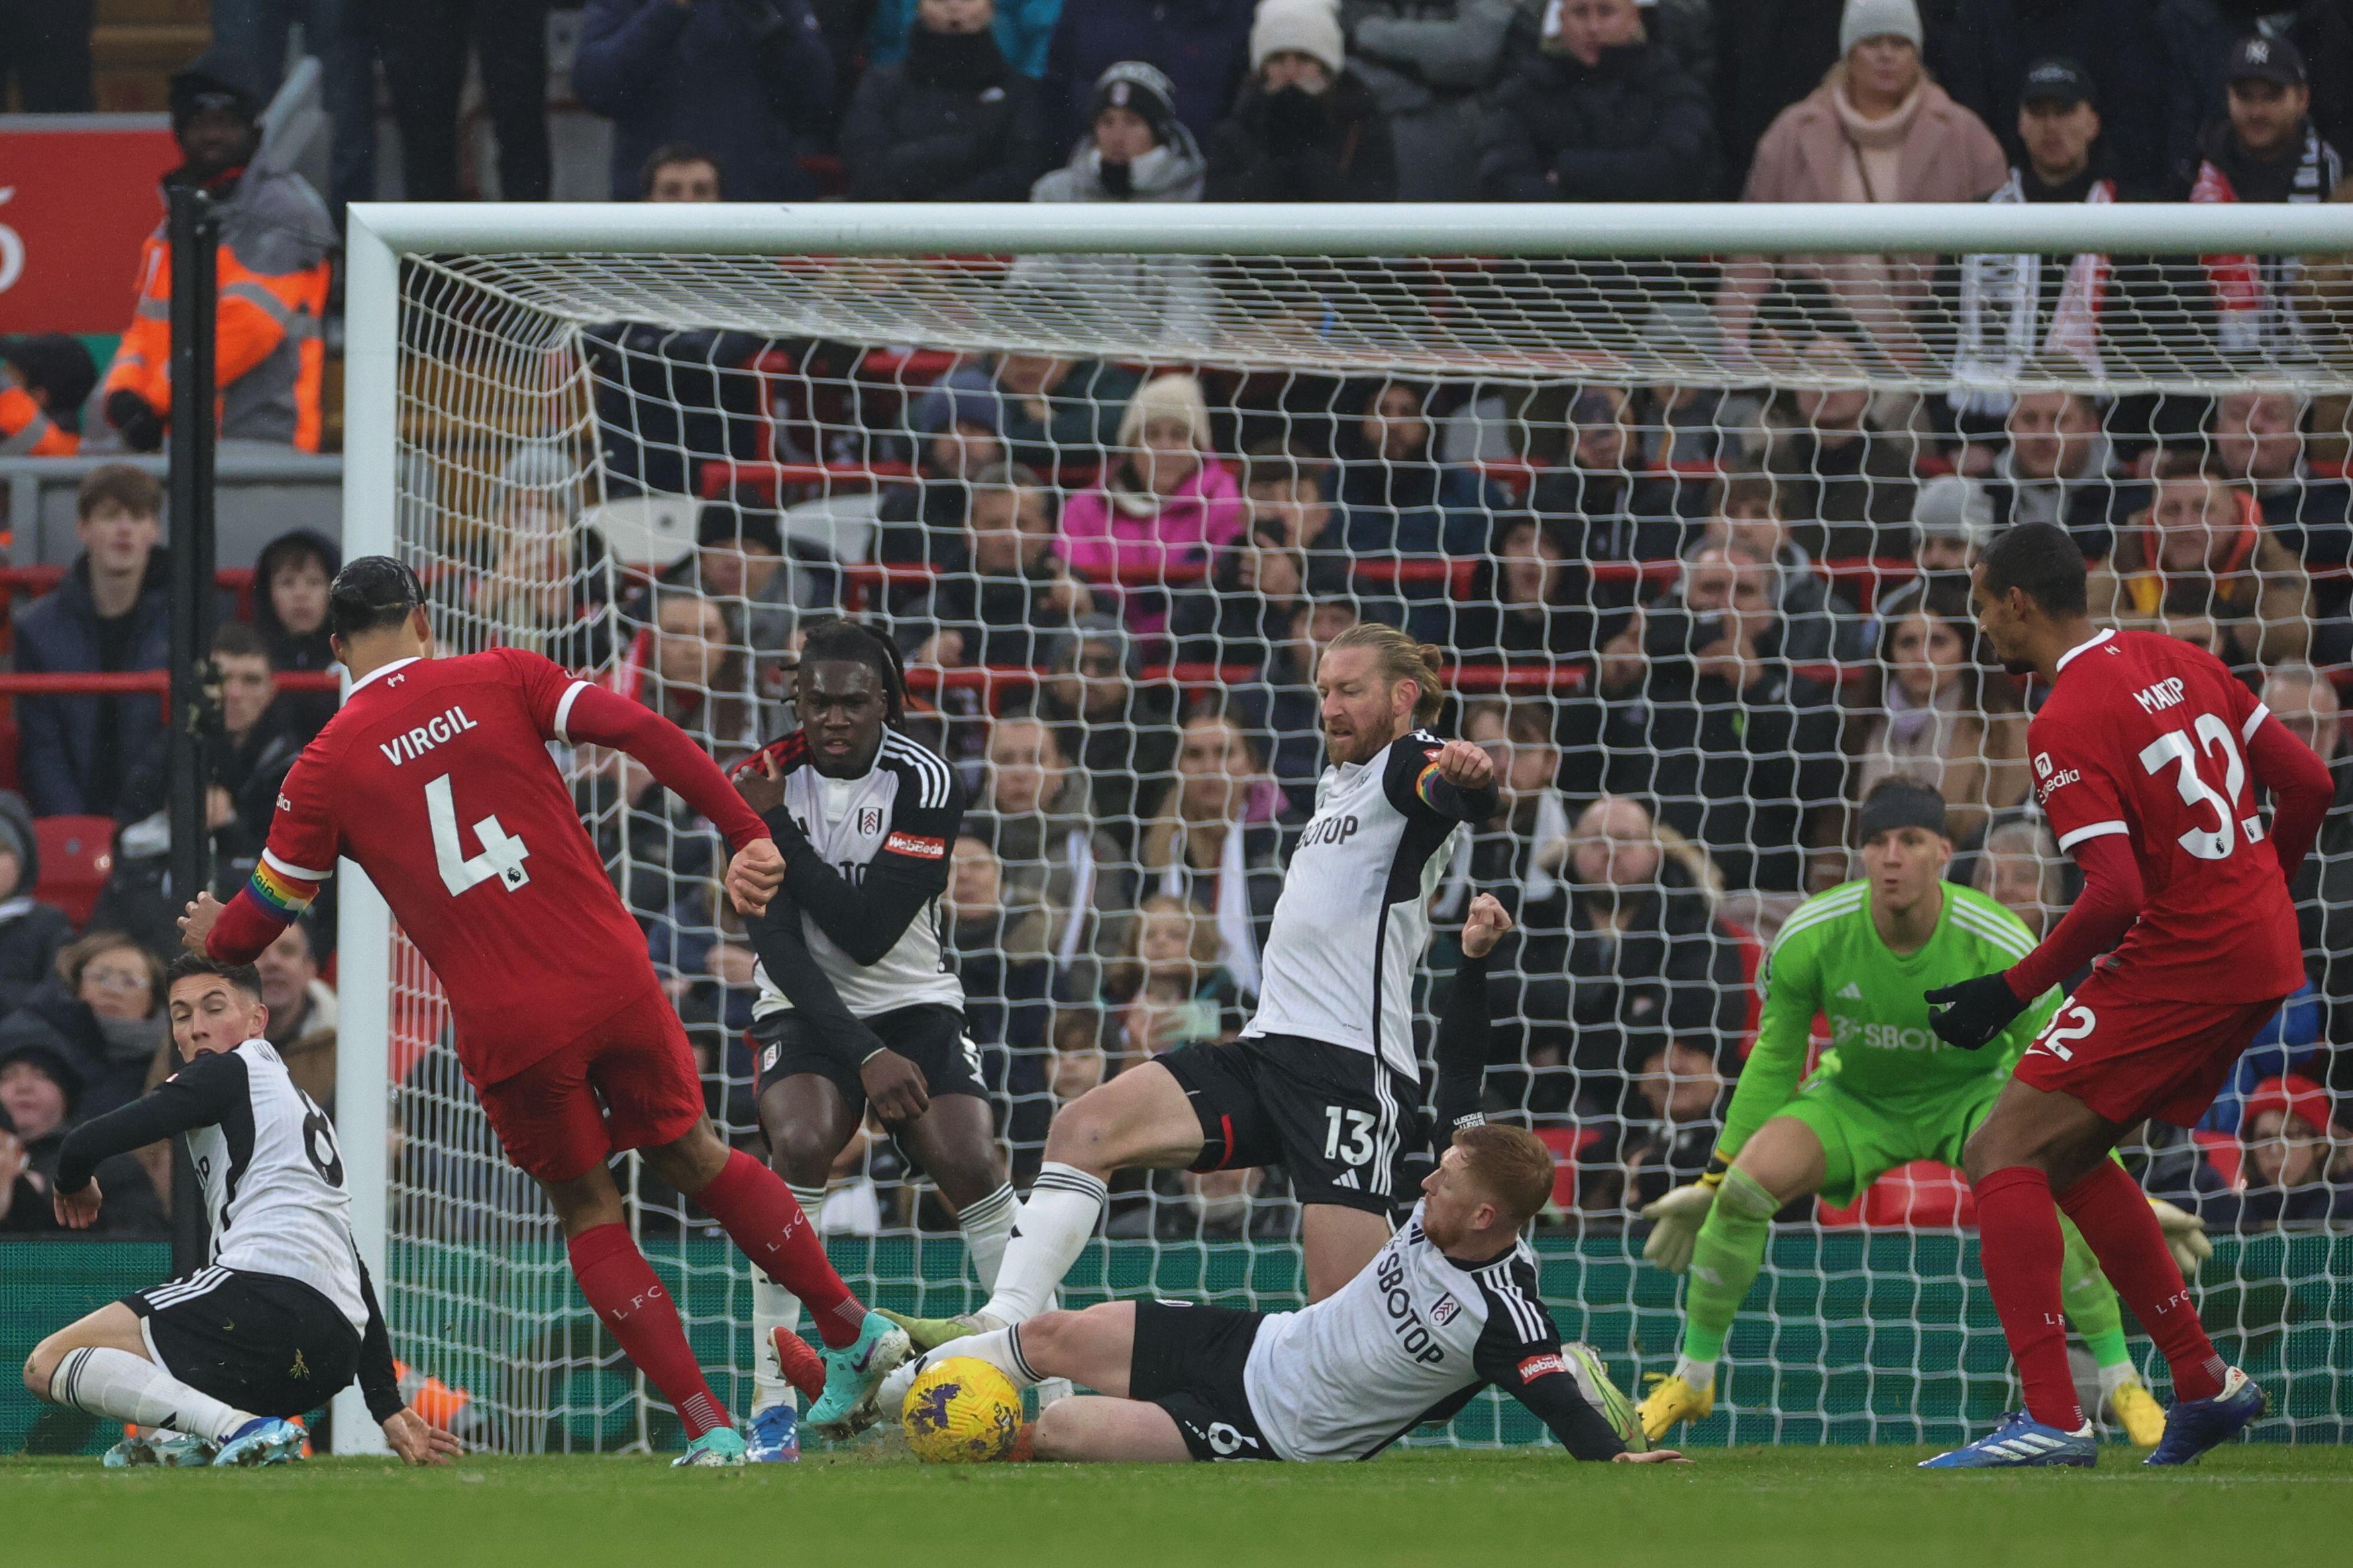 Fulham - Liverpool 0-0, ACUM, Digi Sport 2. Echipa lui Jurgen Klopp continuă lupta pentru titlu